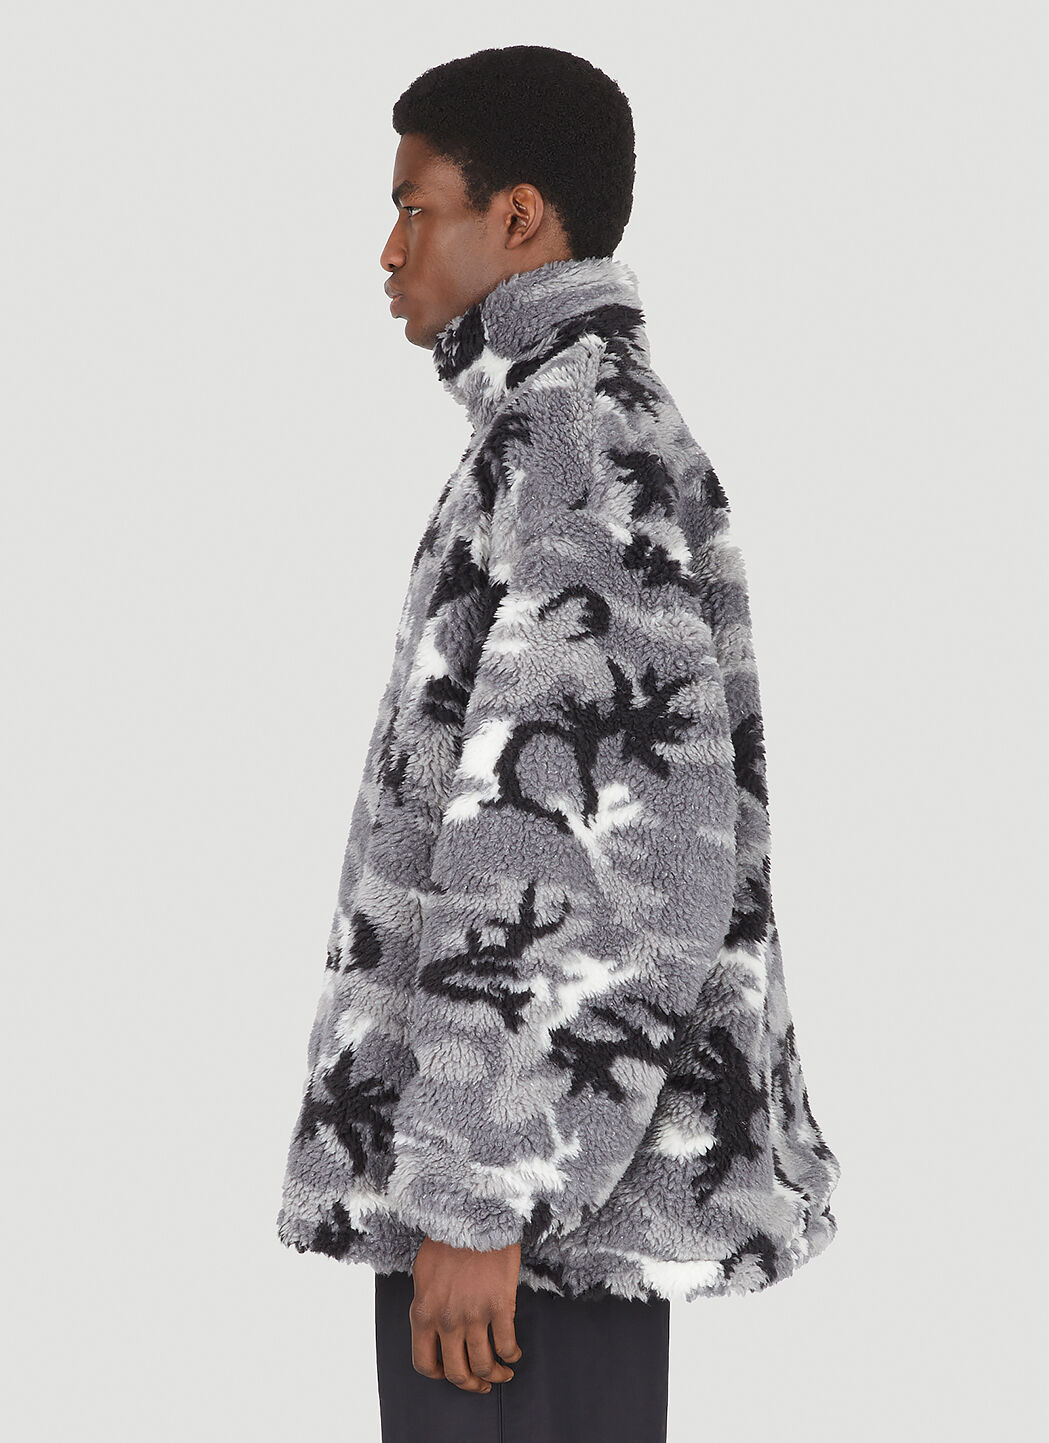 Balenciaga Men's Camouflage Fleece Jacket in Grey | LN-CC®